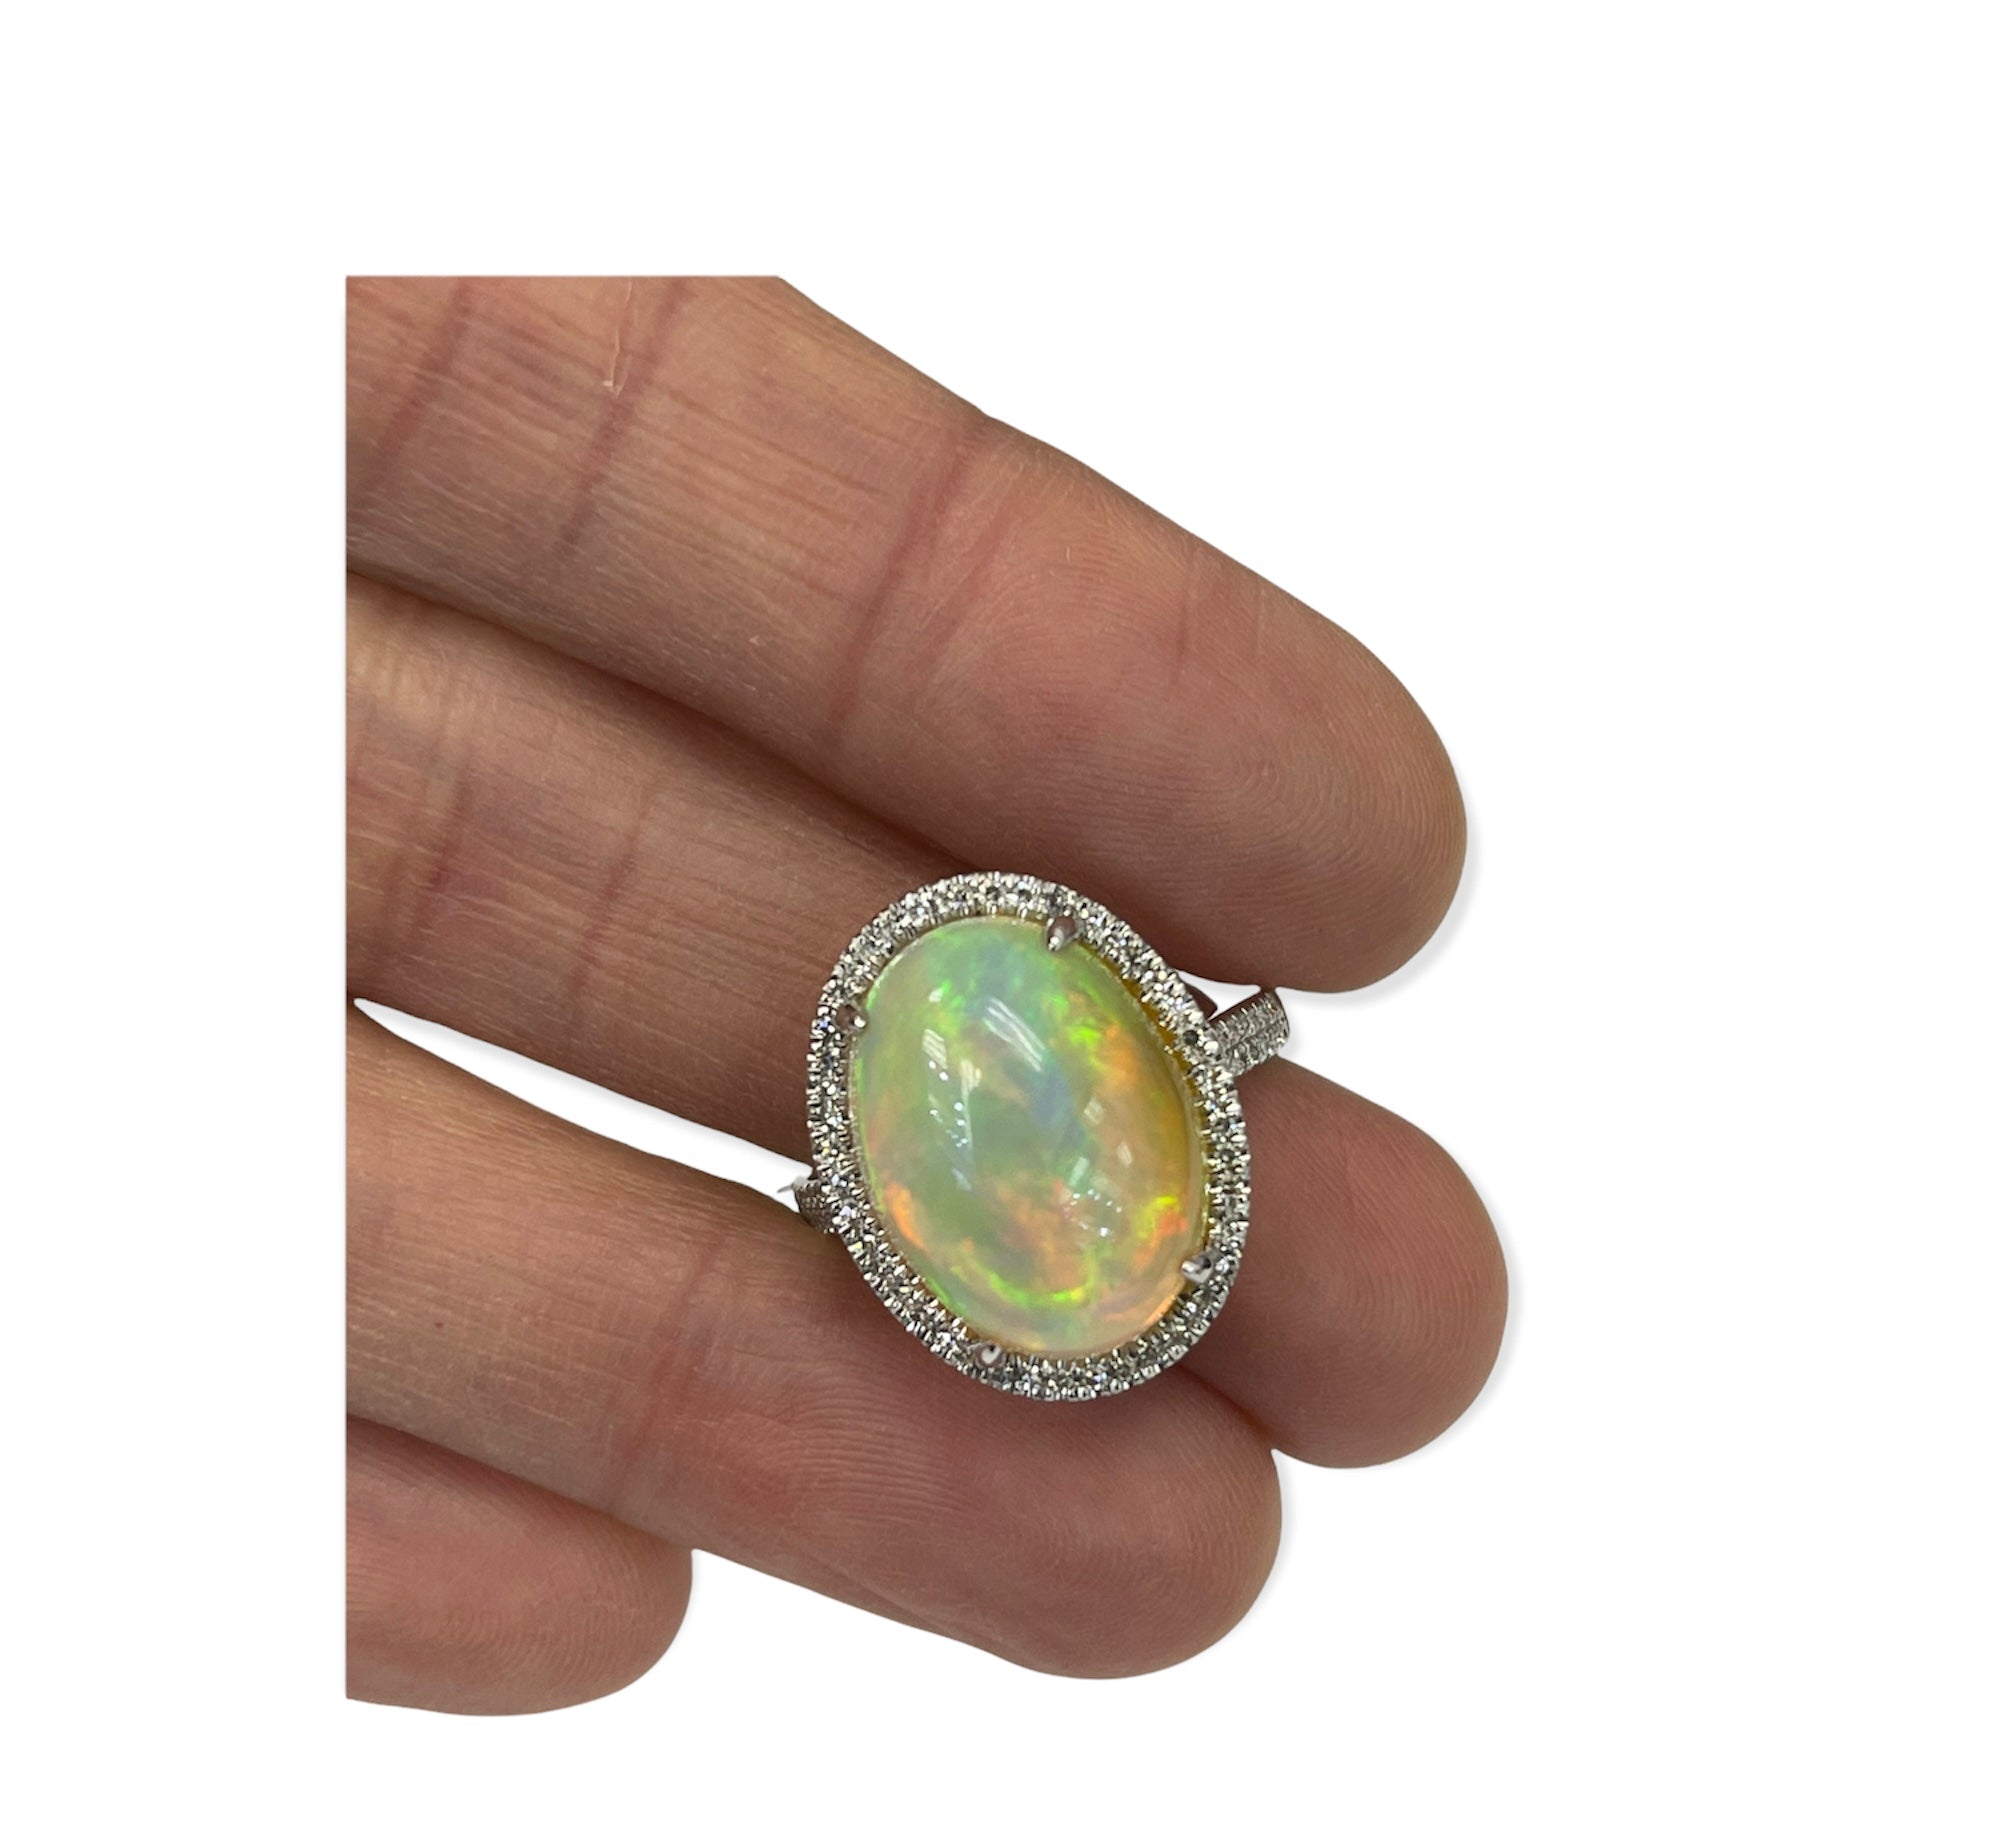 OpaL Gem Oval Diamond Ring White Gold 14kt